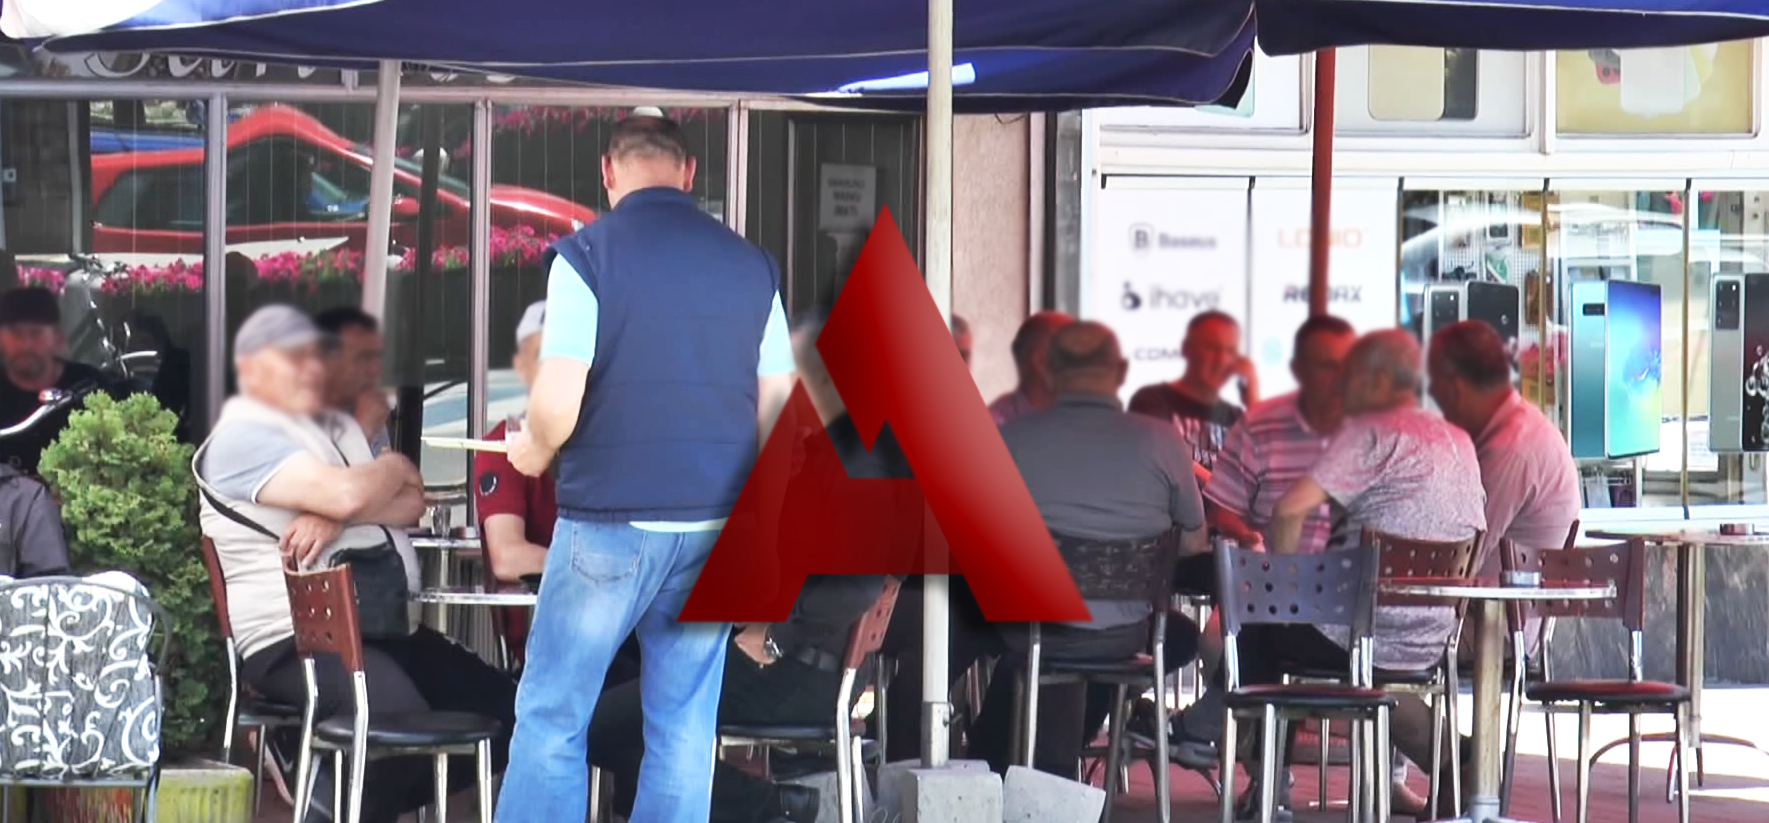 Da li su Novopazarci zadovoljni uslugama u restoranima i kafićima? (video)